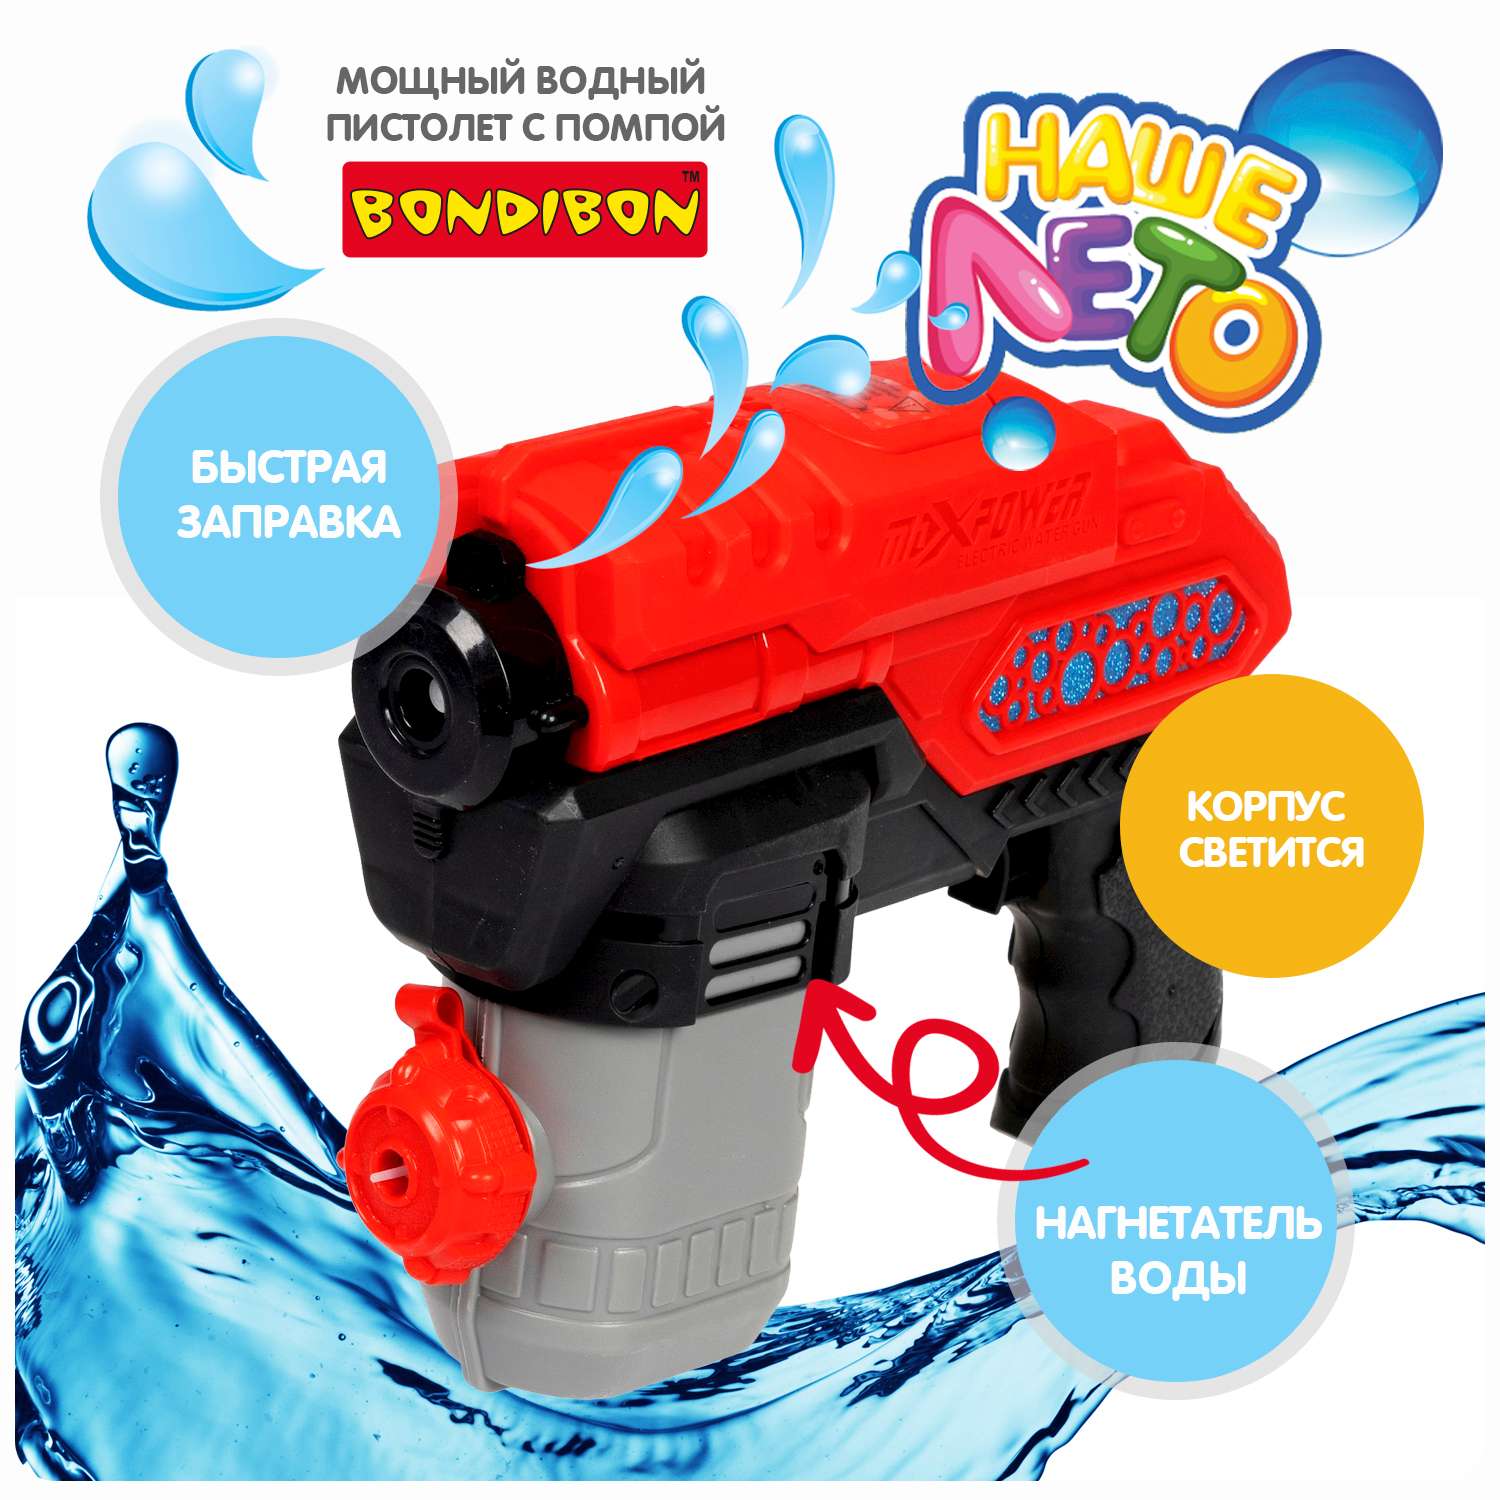 Водный пистолет BONDIBON с автоматической стрельбой и светом красного цвета серия Наше Лето - фото 2